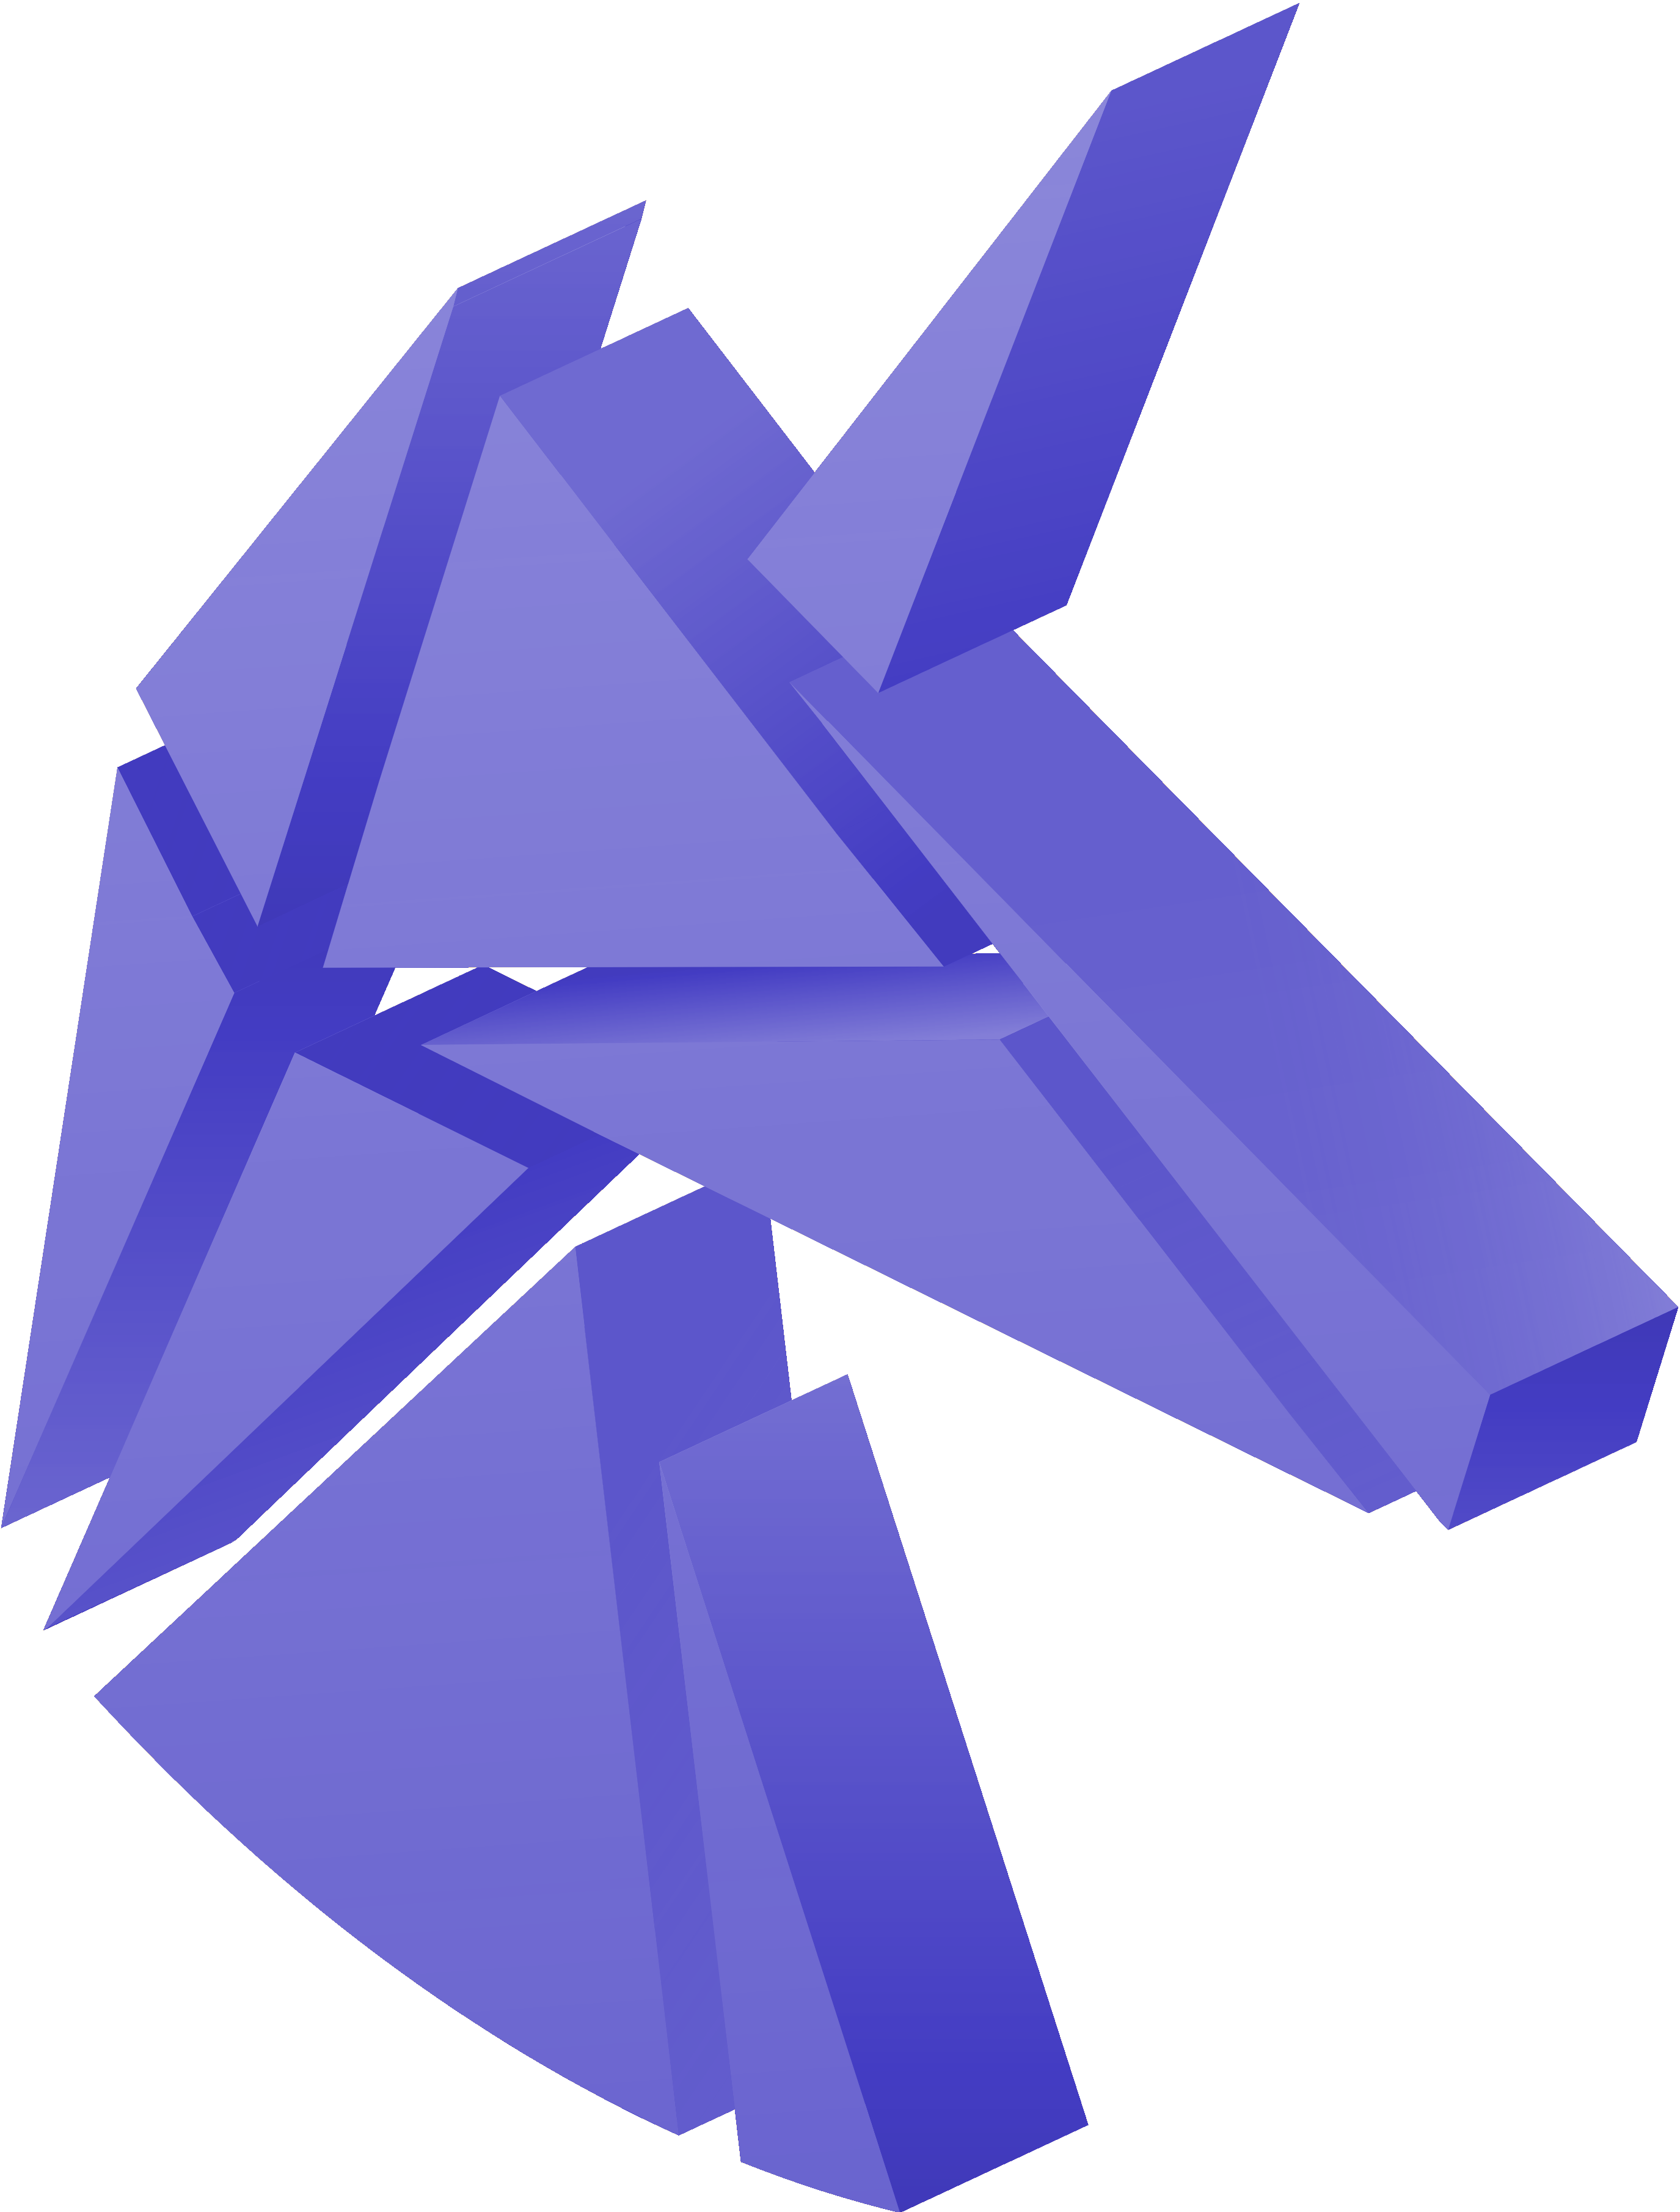 Unicorn trading indicators logo